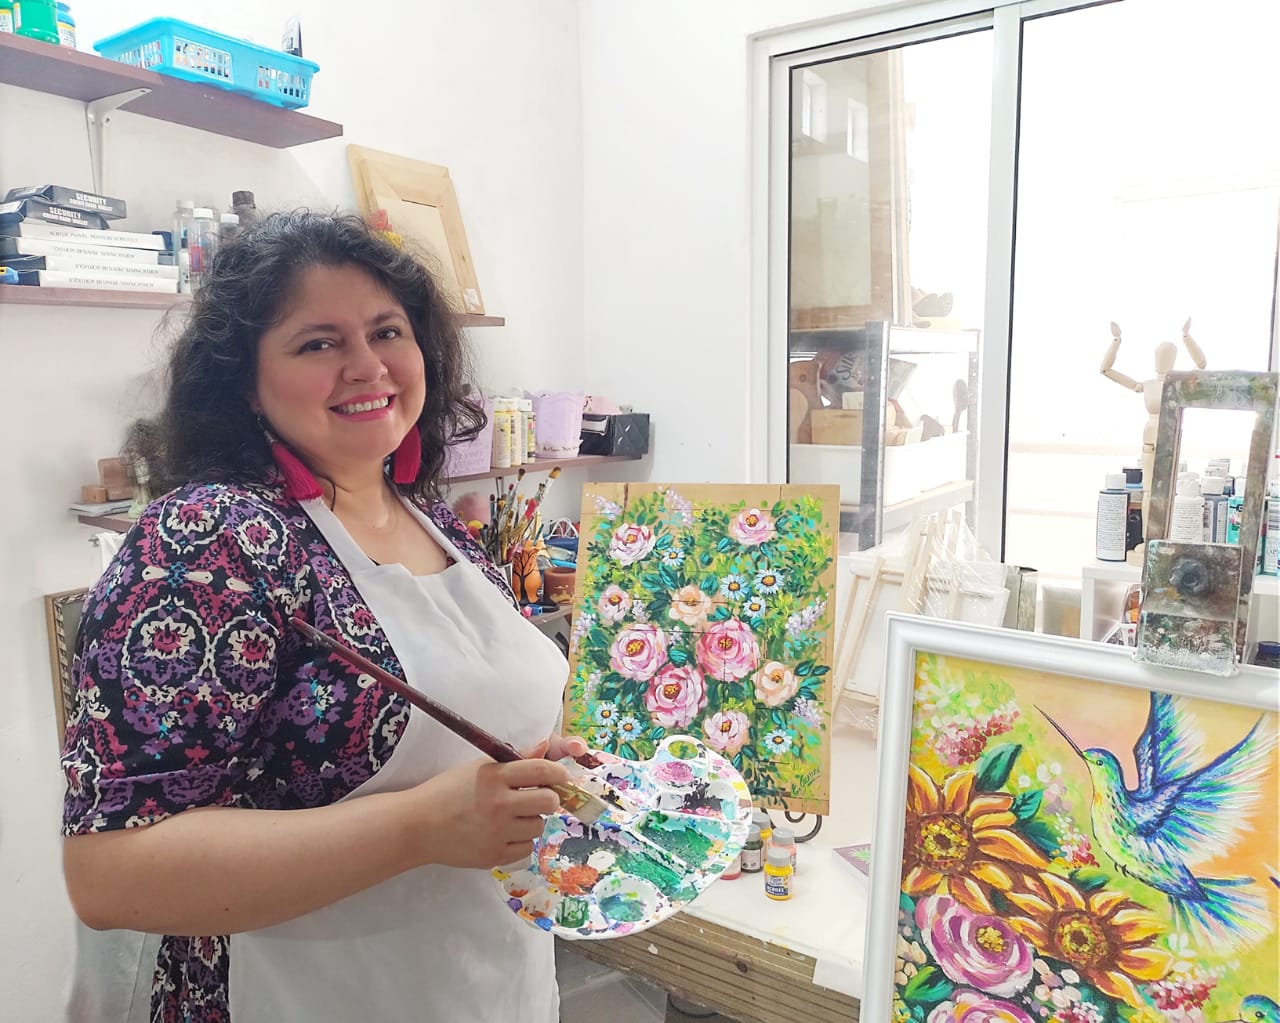 Conoce la historia de Elisa Guerra y su emprendimiento de pinturas